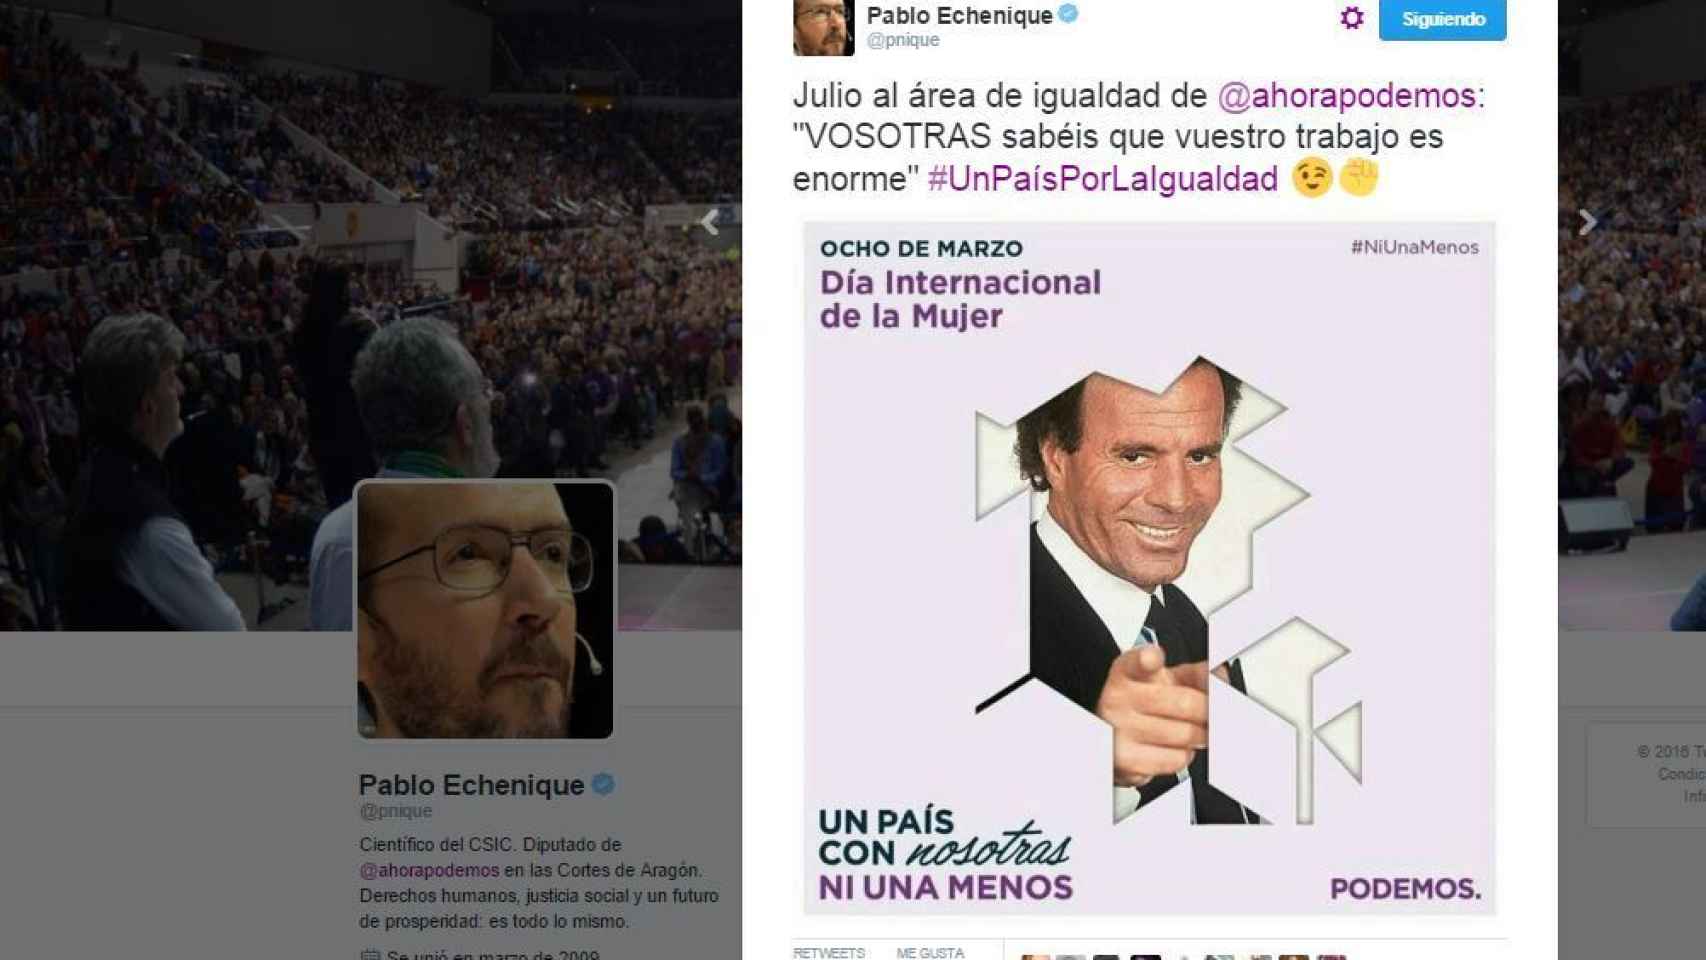 El tuit de Pablo Echenique en el que bromeó sobre la campaña usando a Julio Iglesias.